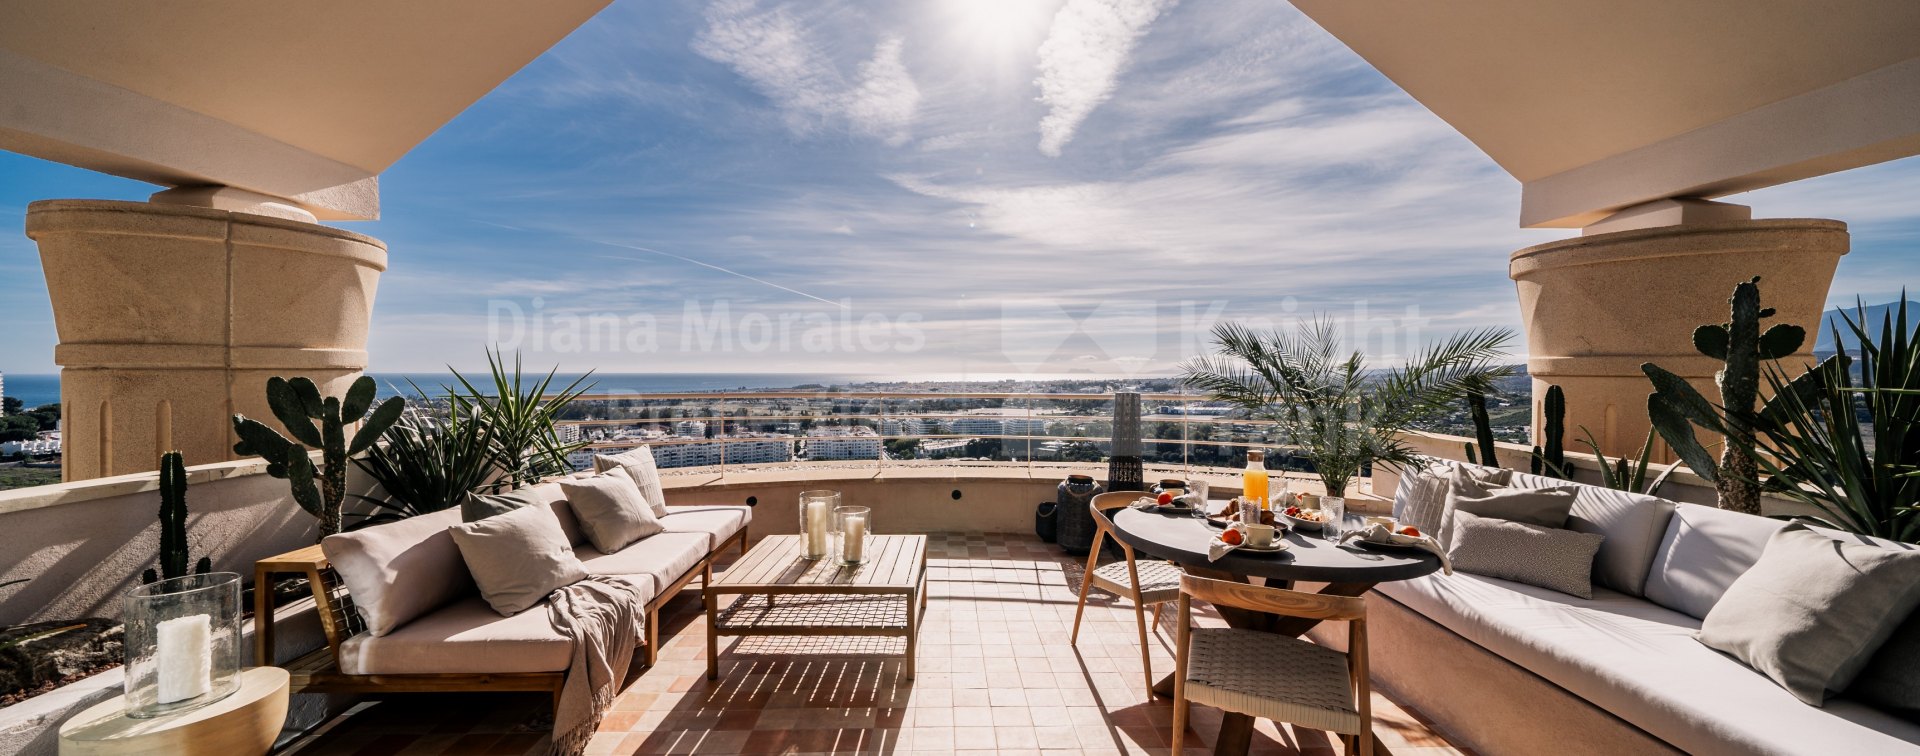 Magna Marbella, Двухуровневый пентхаус скандинавского дизайна с панорамным видом в Долине гольфа